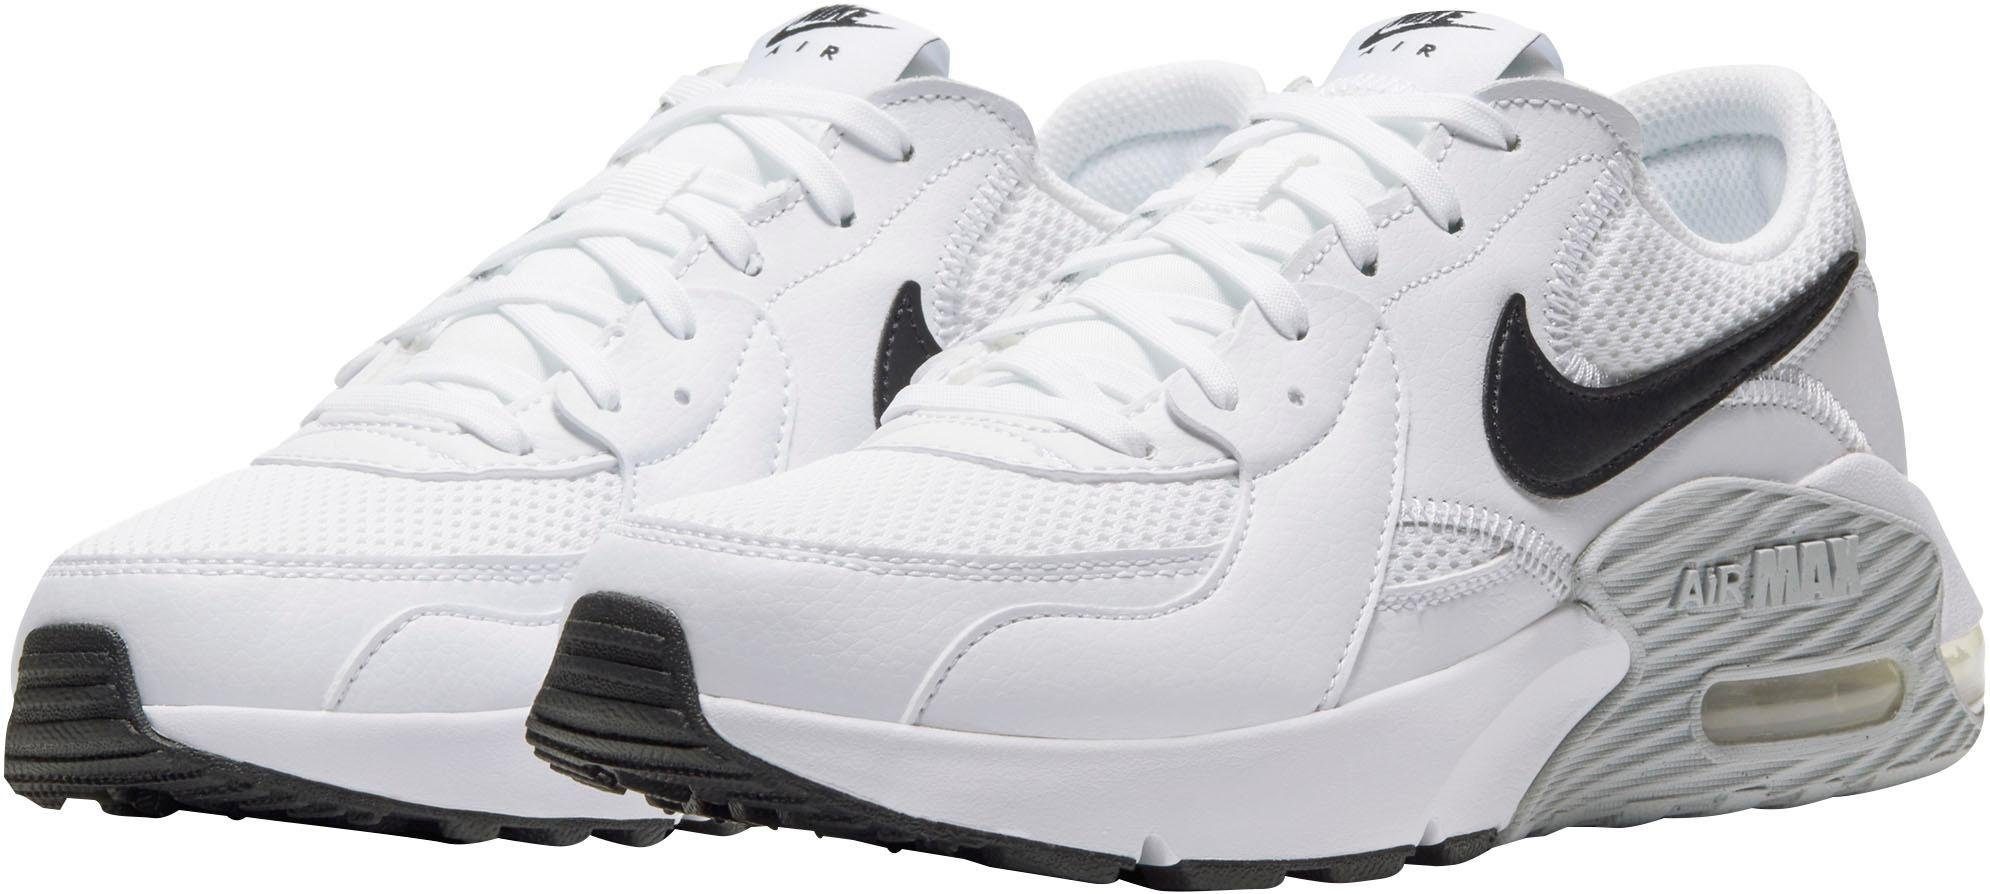 Weiße Nike Air Max Damen Schuhe online kaufen | OTTO